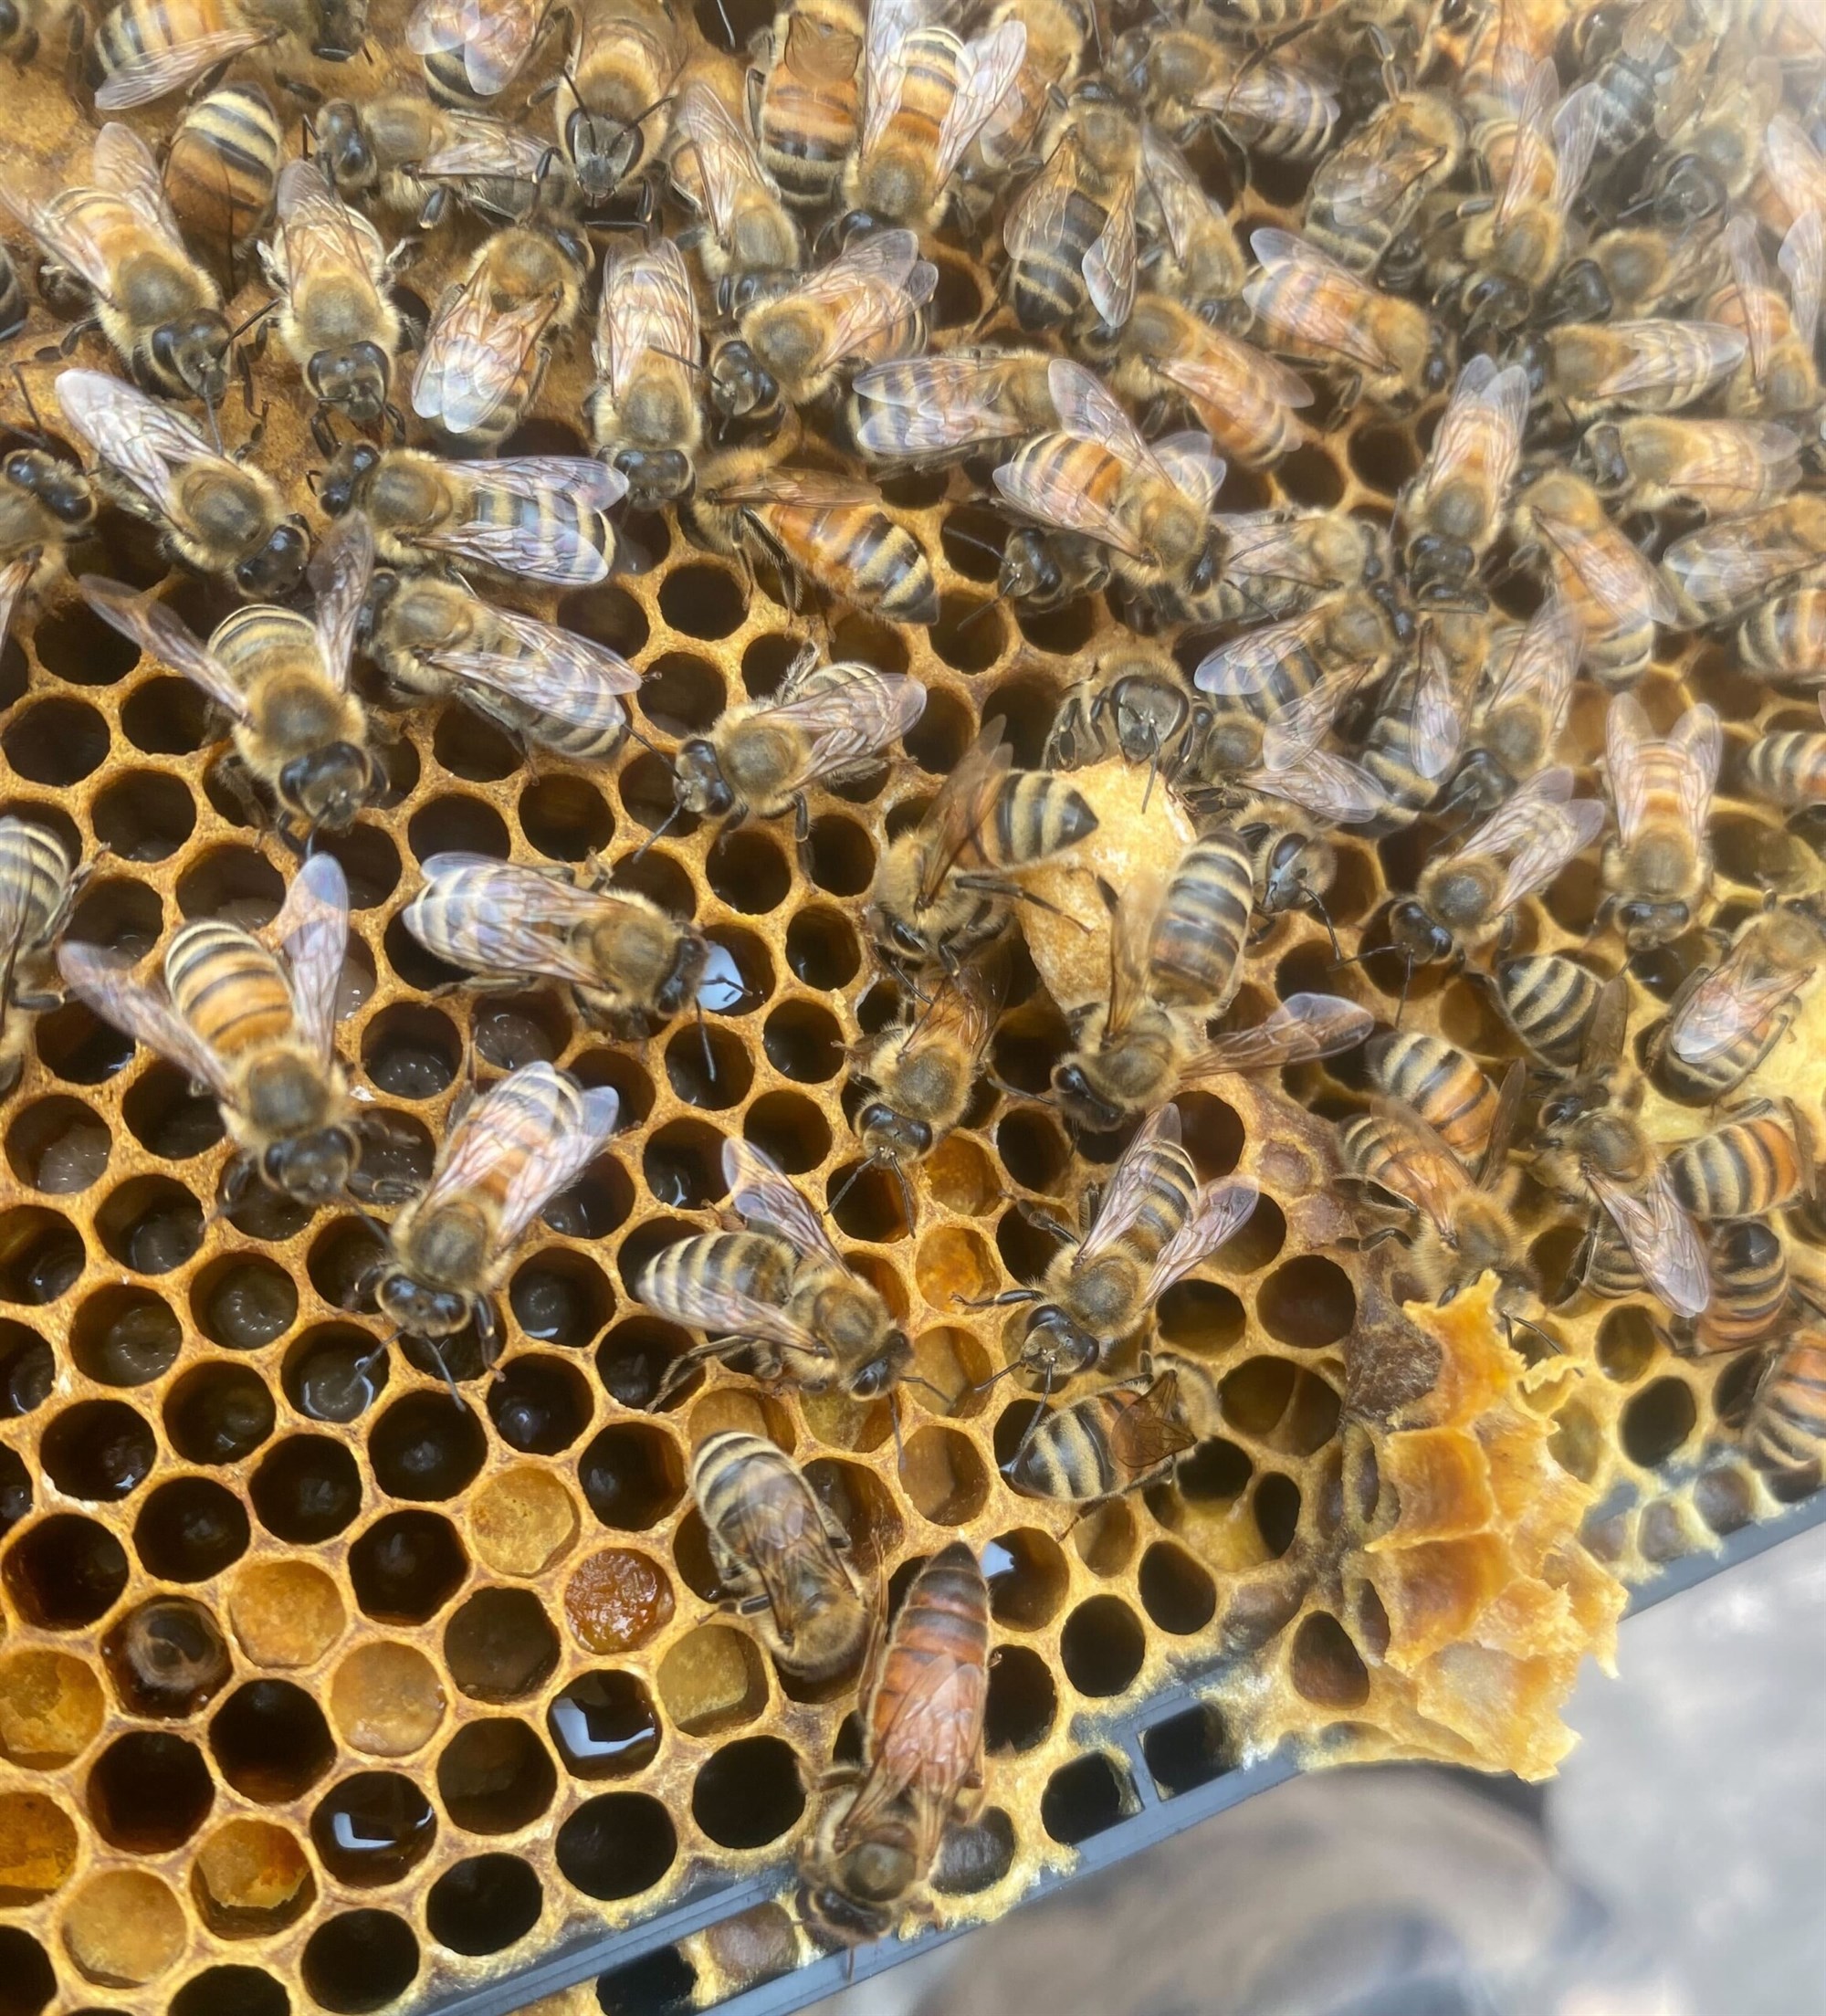 veris residential honeybees